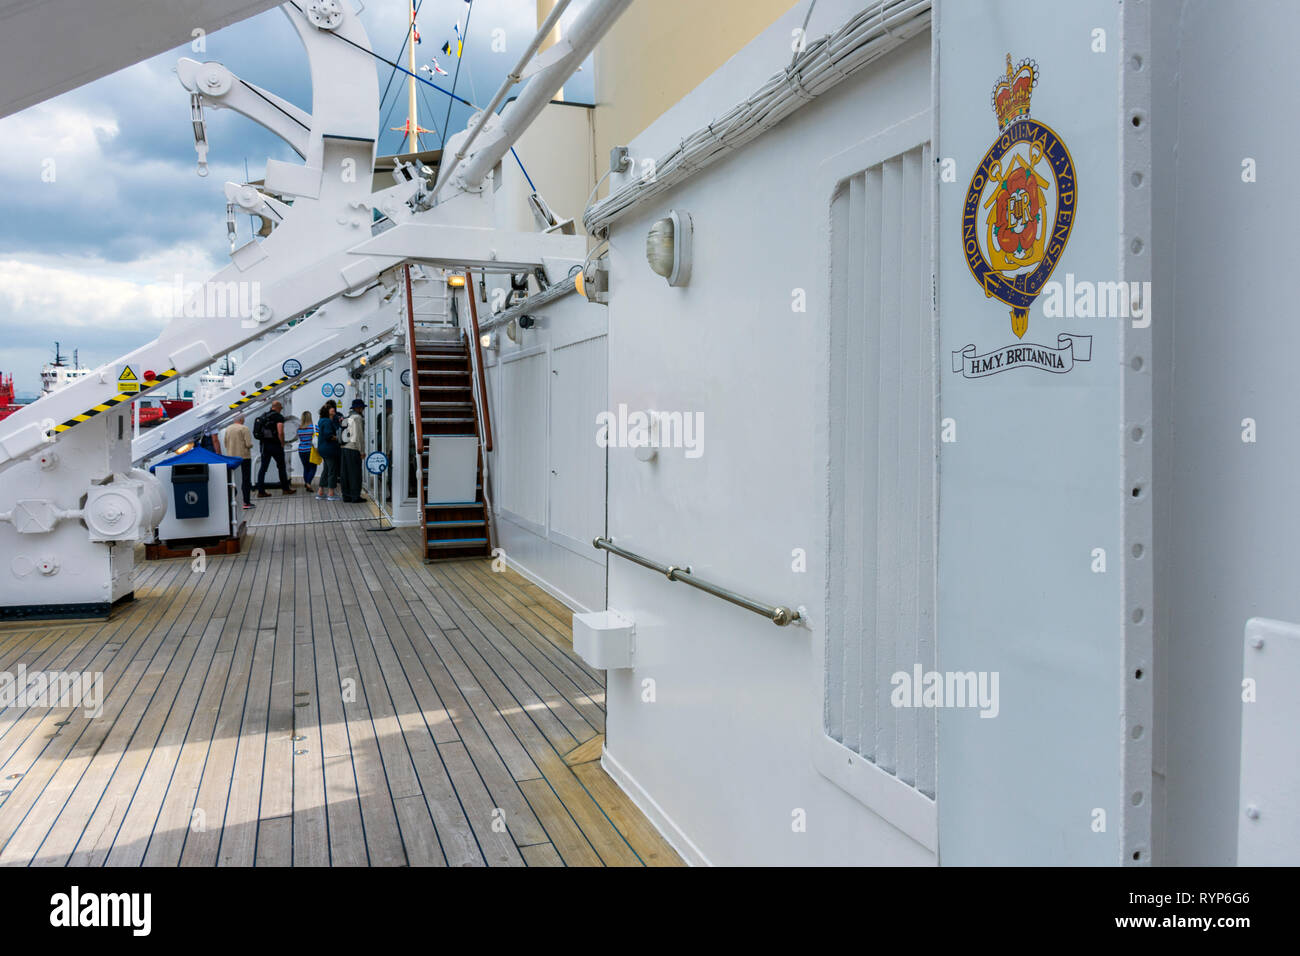 Oberdeck der Royal Yacht Britannia, Hafen von Leith, Edinburgh, Schottland, Großbritannien Stockfoto